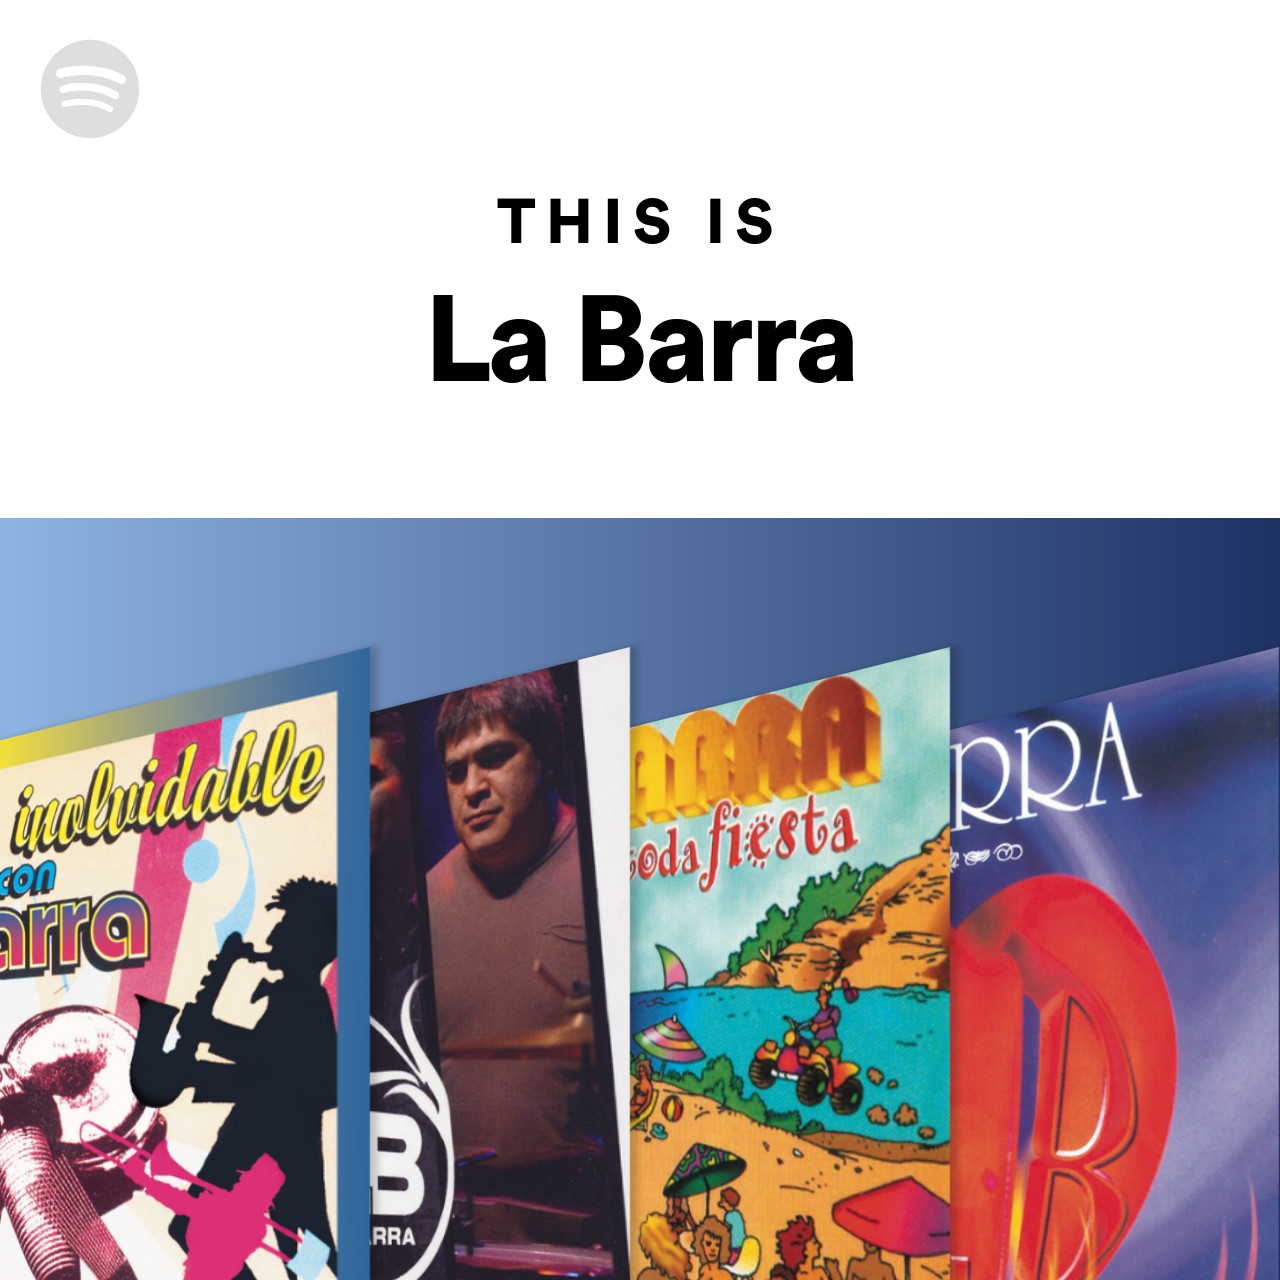 This Is La Barra